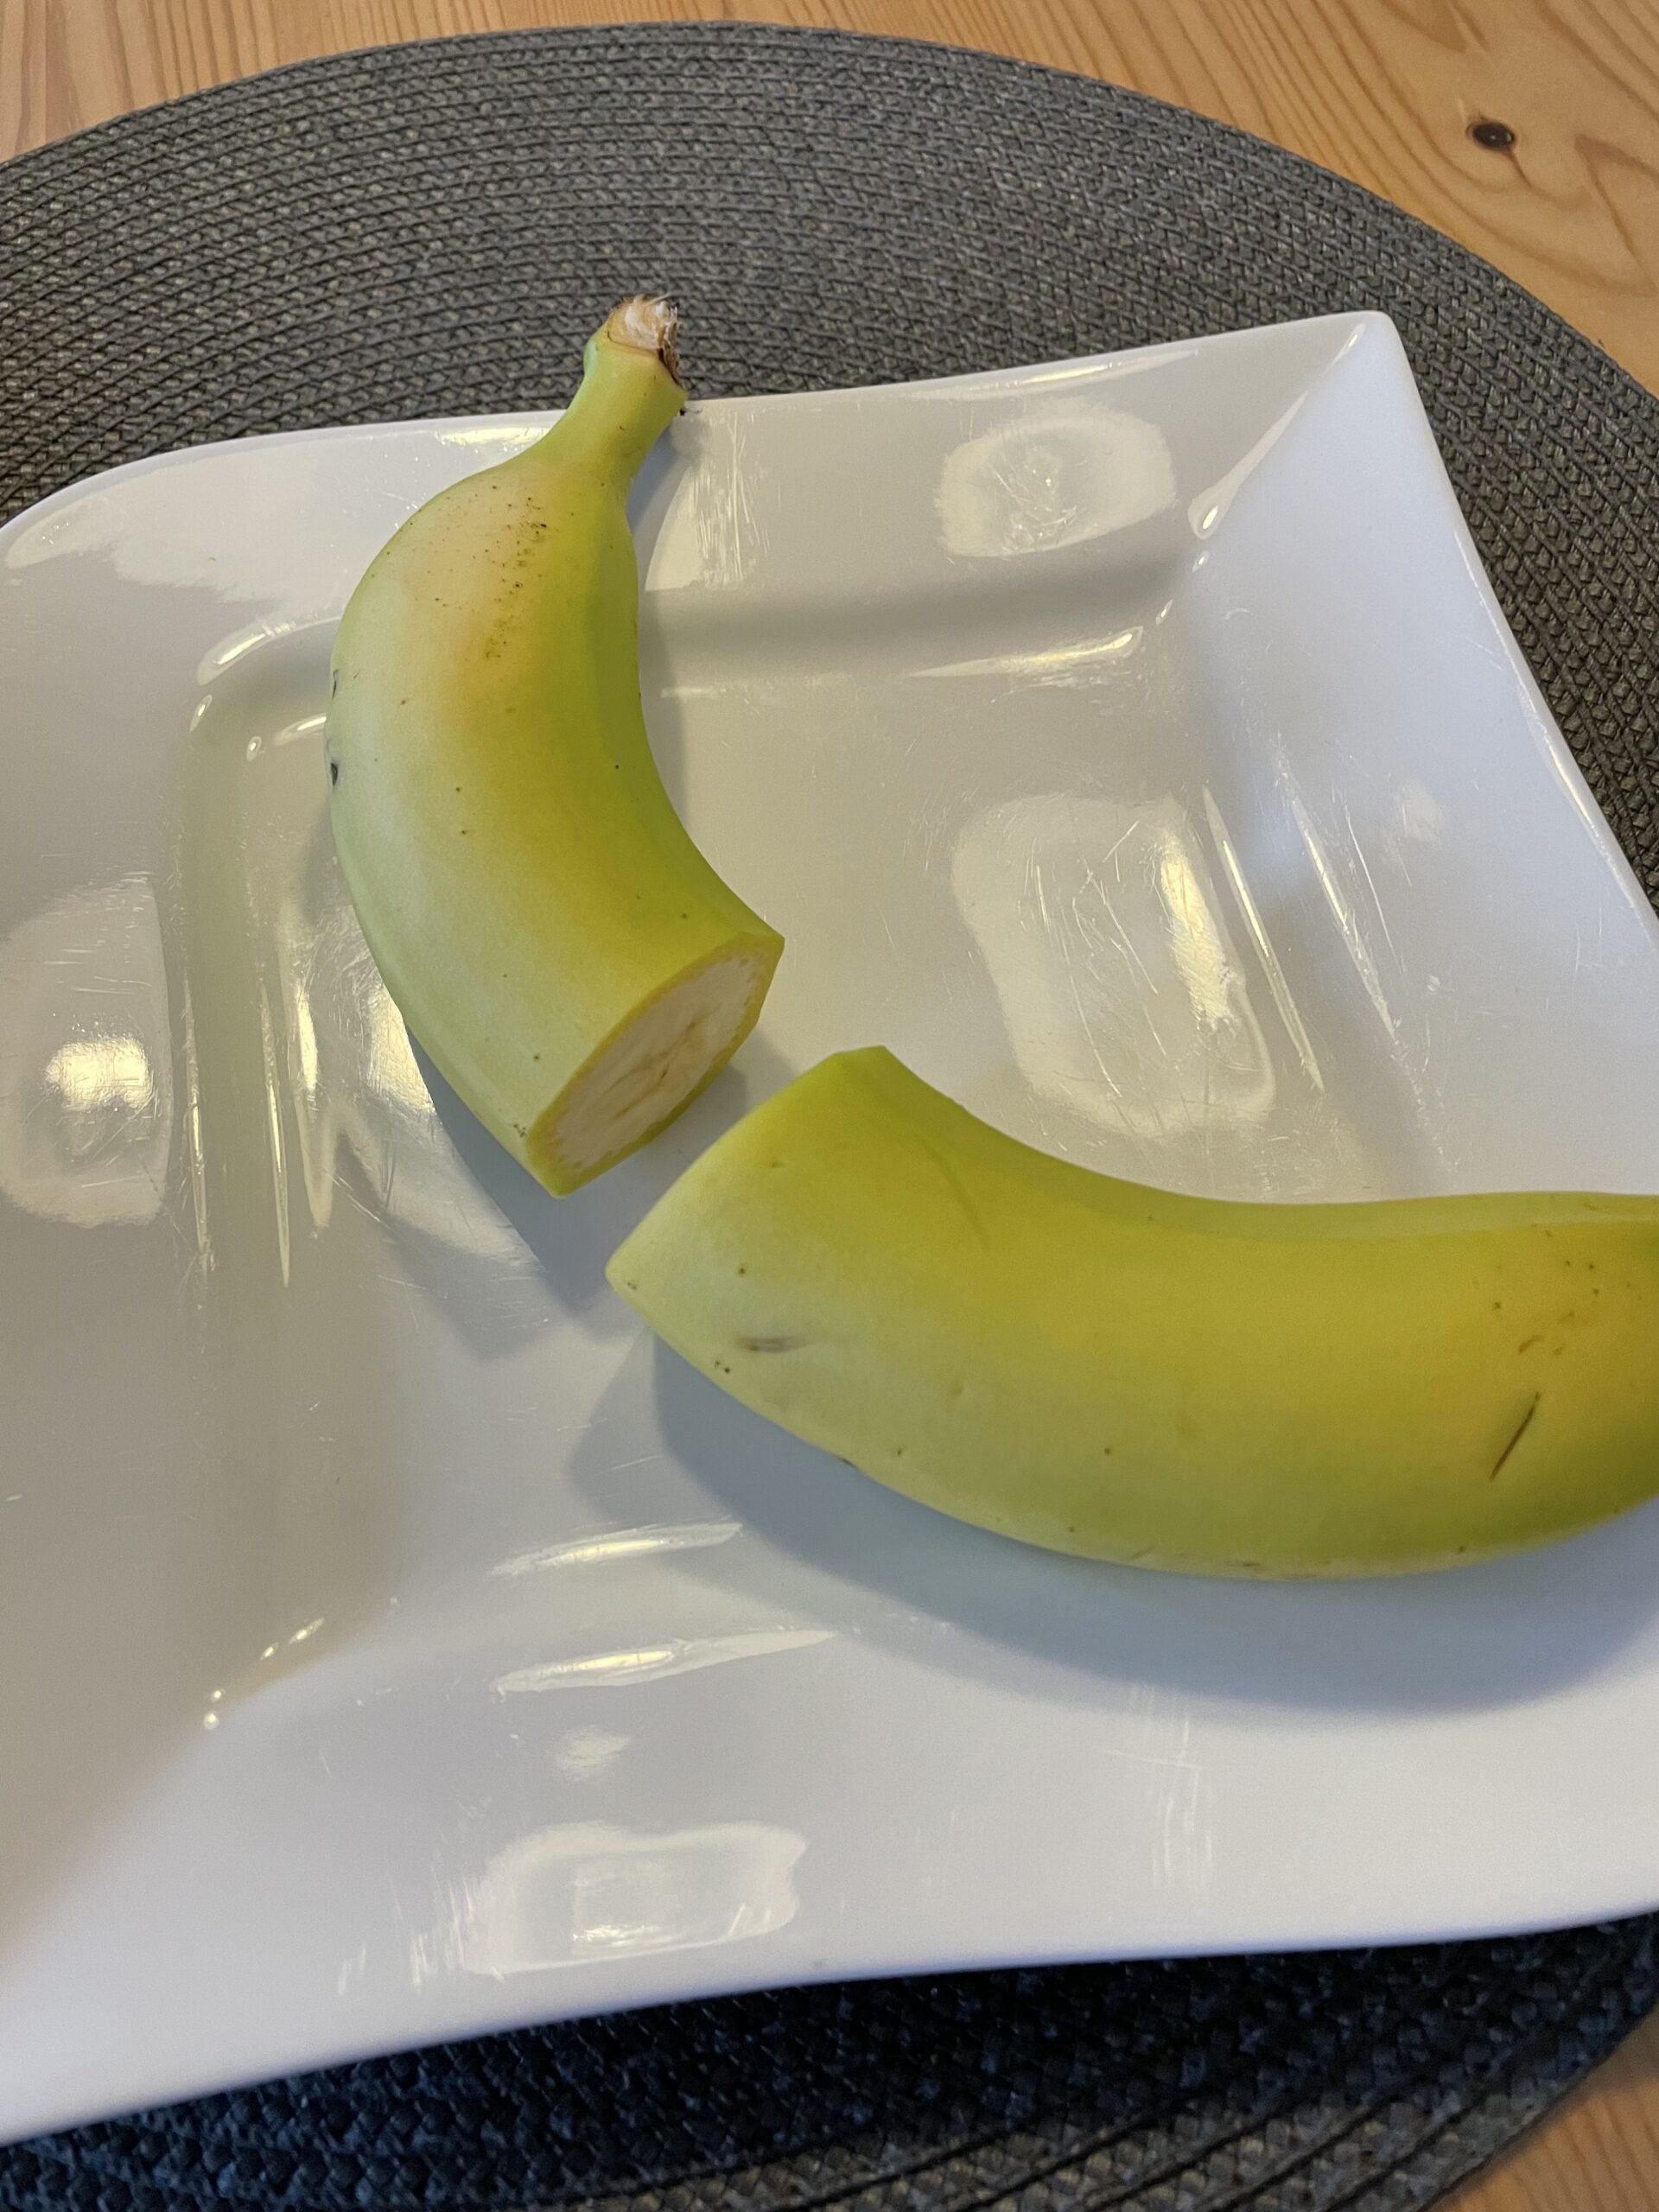 Bild zum Schritt 16 für das Bastel- und DIY-Abenteuer für Kinder: 'Schneidet zuerst die Banane in der Mitte auseinander.'